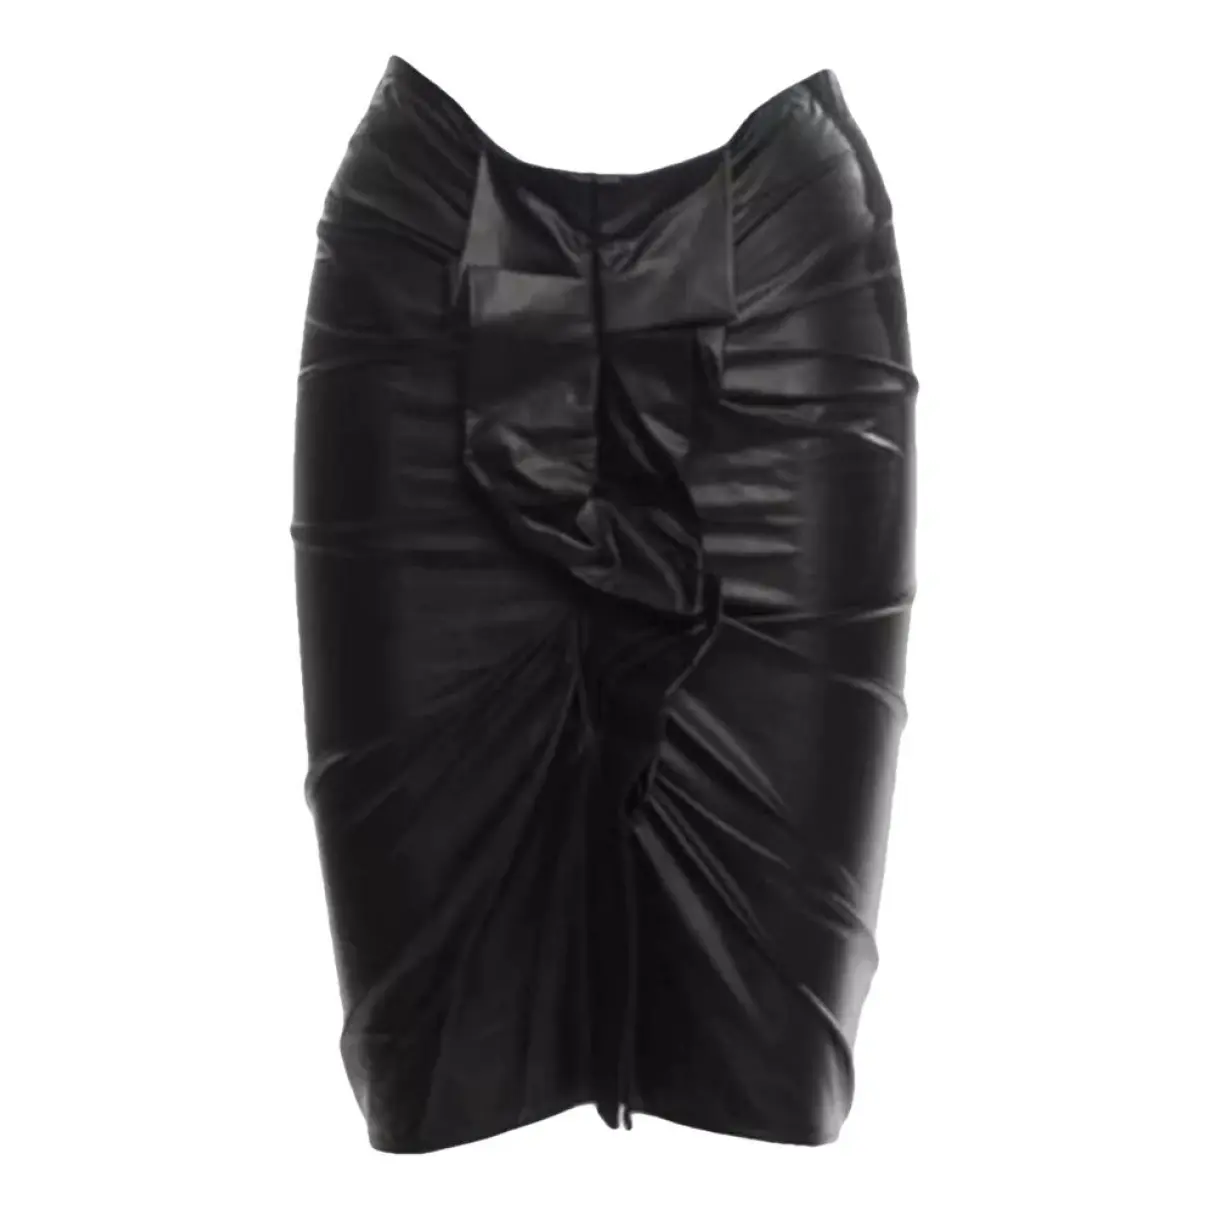 Vegan leather mid-length skirt